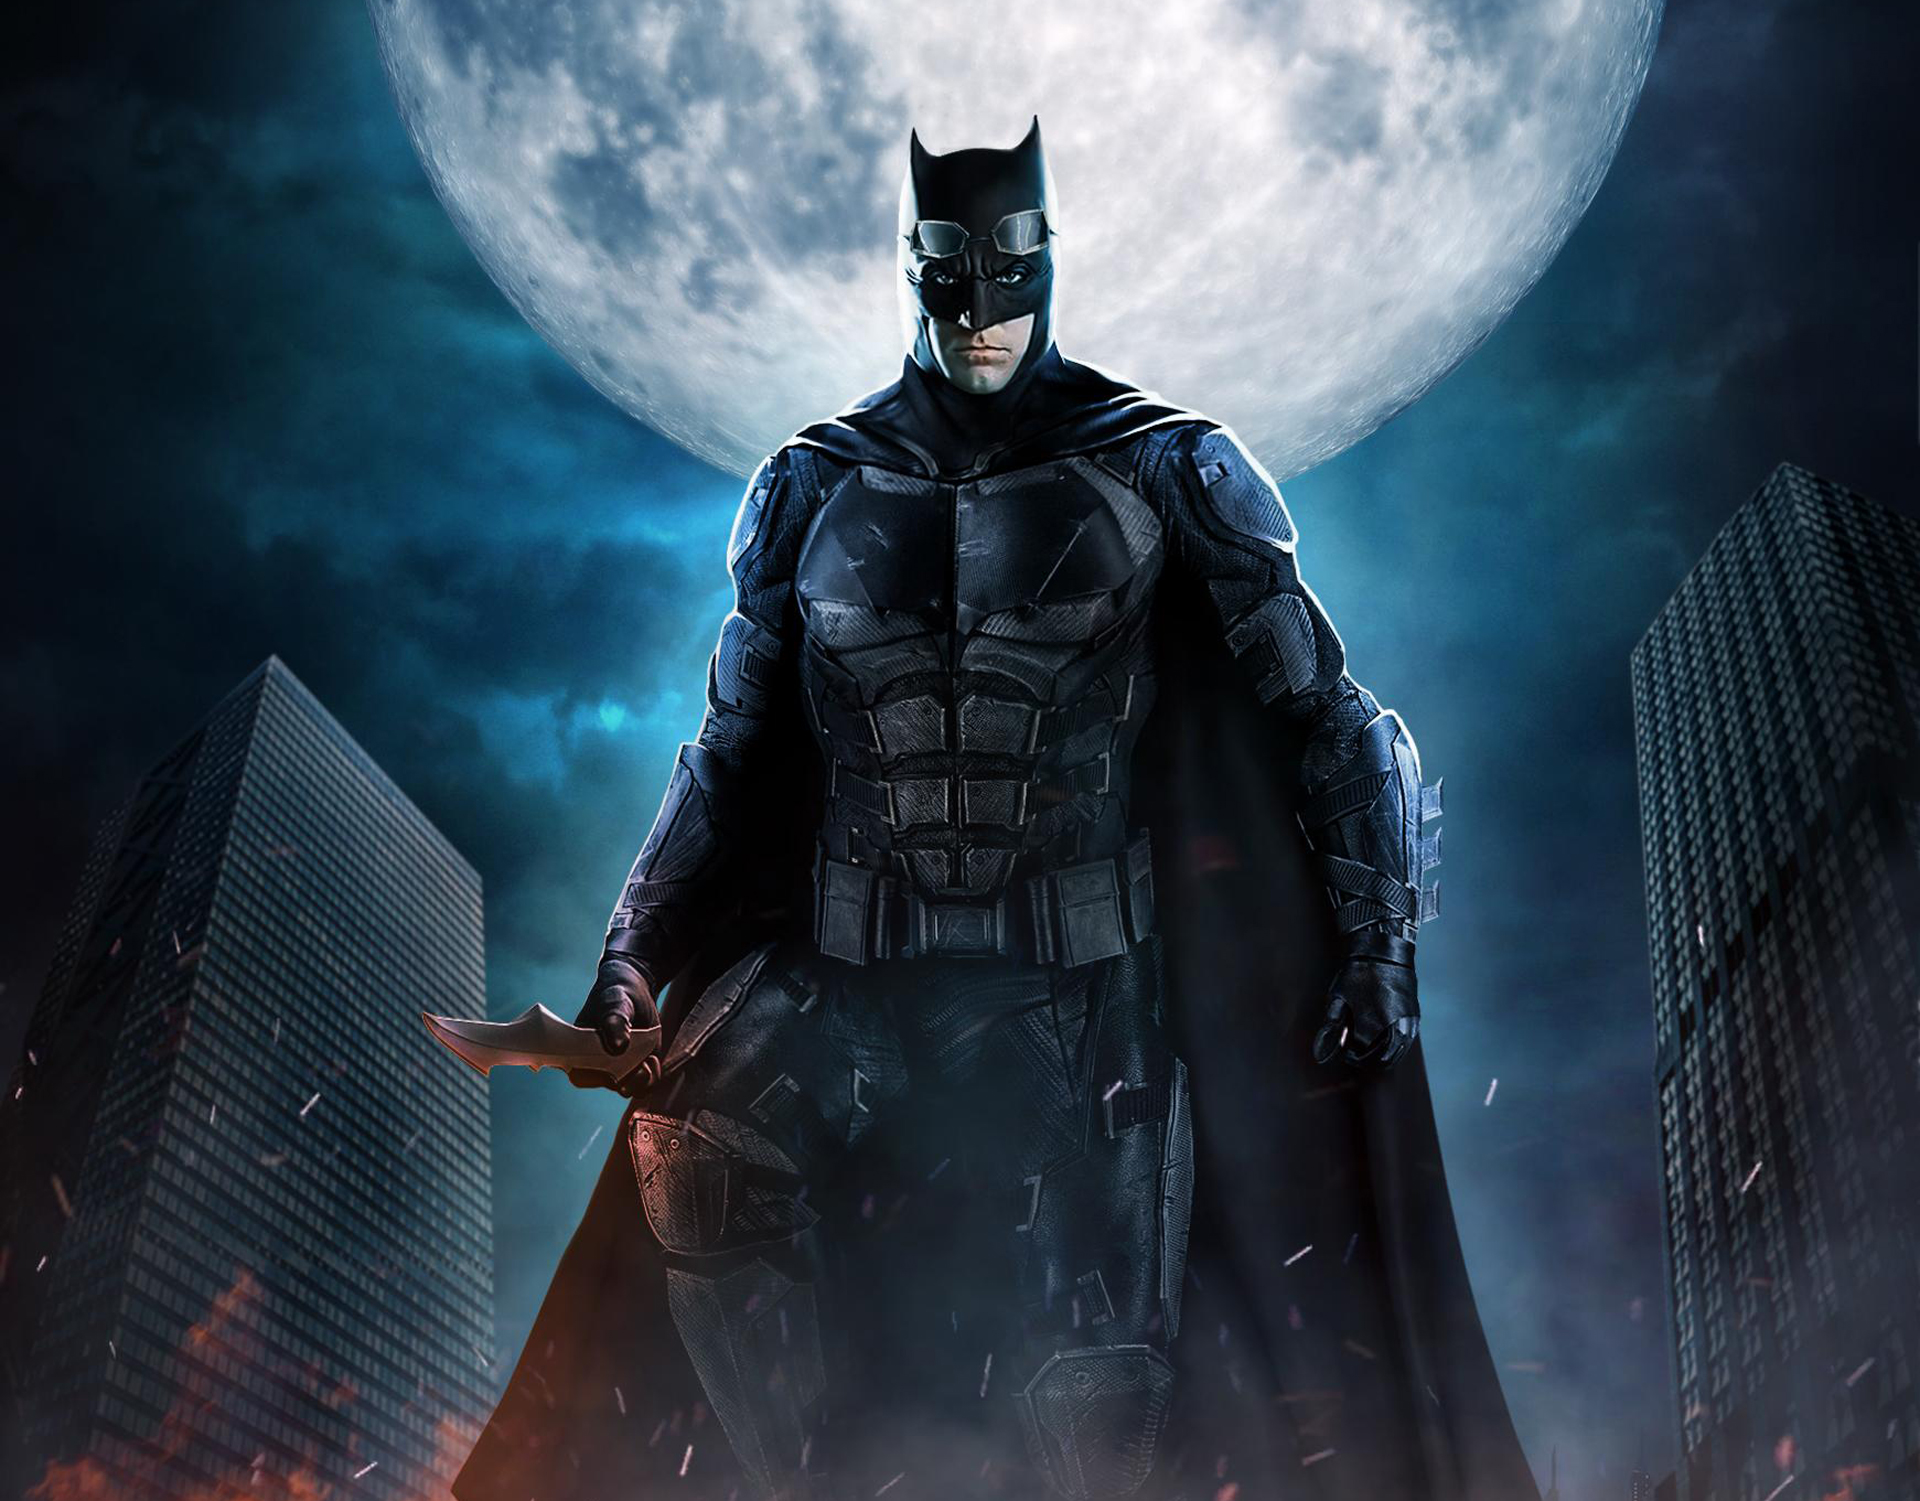 Justice League Batman The Dark Knight Fan Art, Hd Movies, 4K Wallpapers